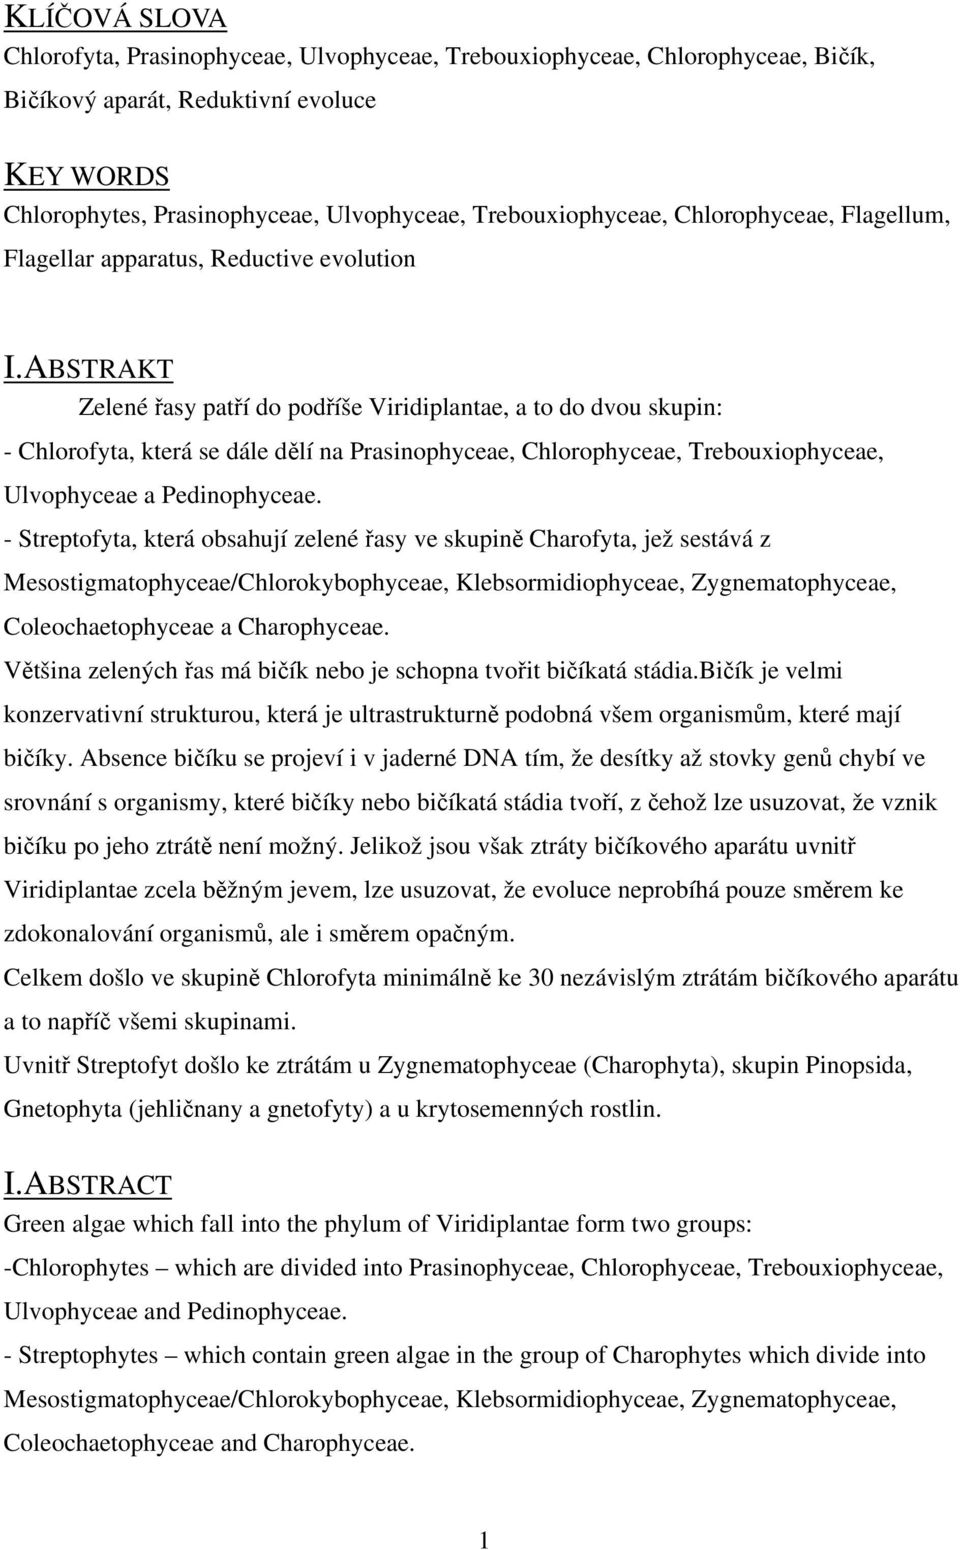 ABSTRAKT Zelené řasy patří do podříše Viridiplantae, a to do dvou skupin: - Chlorofyta, která se dále dělí na Prasinophyceae, Chlorophyceae, Trebouxiophyceae, Ulvophyceae a Pedinophyceae.